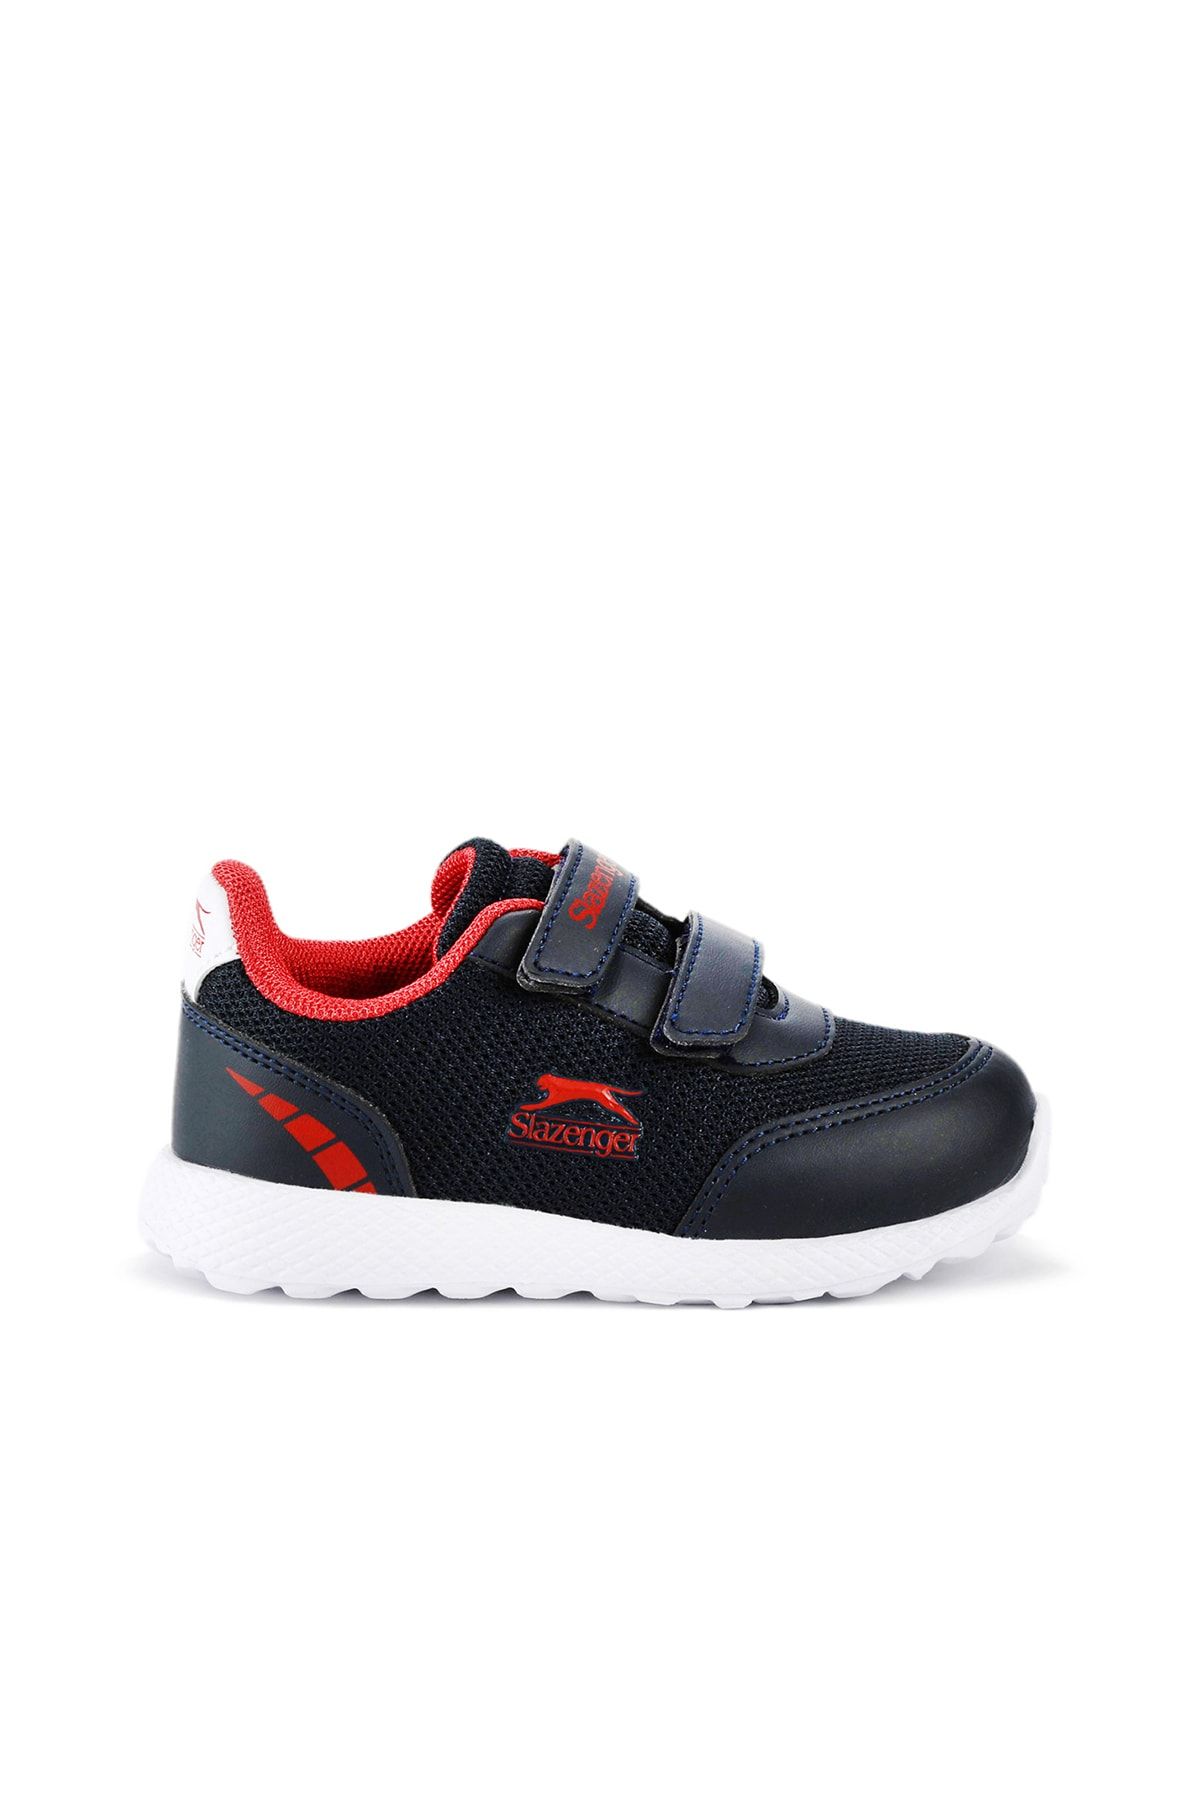 Slazenger Faına Sneaker Erkek Çocuk Ayakkabı Lacivert / Kırmızı